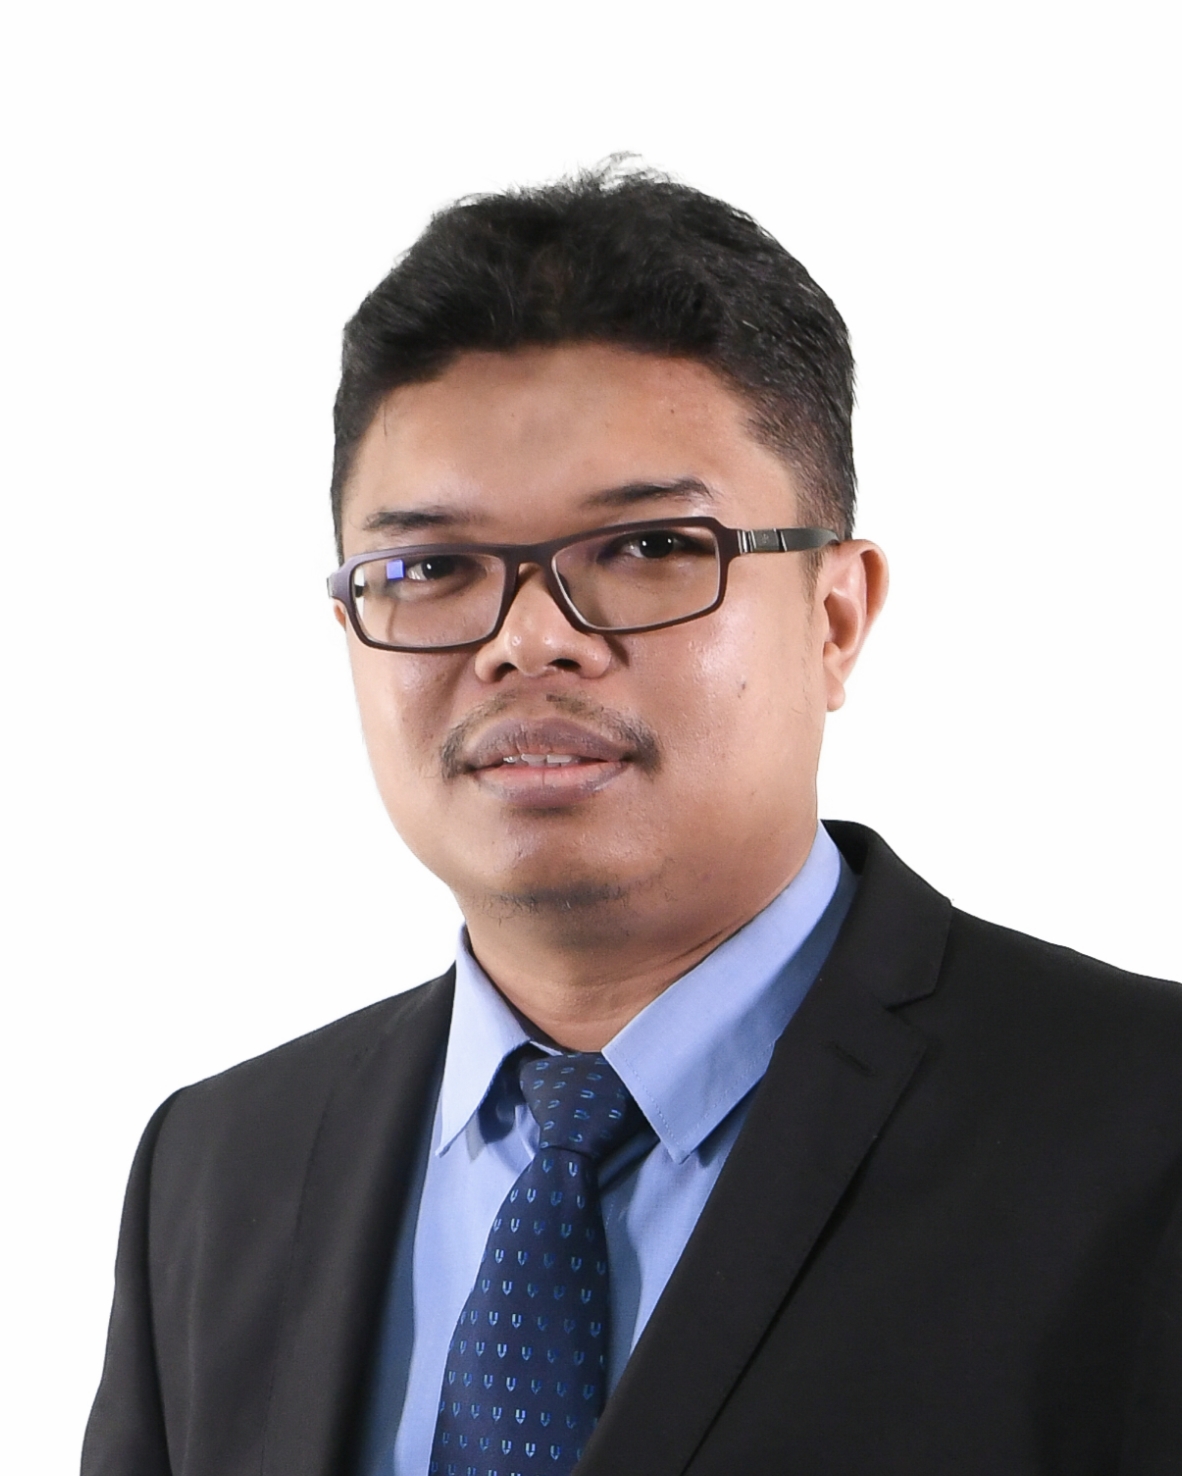 PM. Dr. Mohd Ruzaimi Bin Mat Rejab